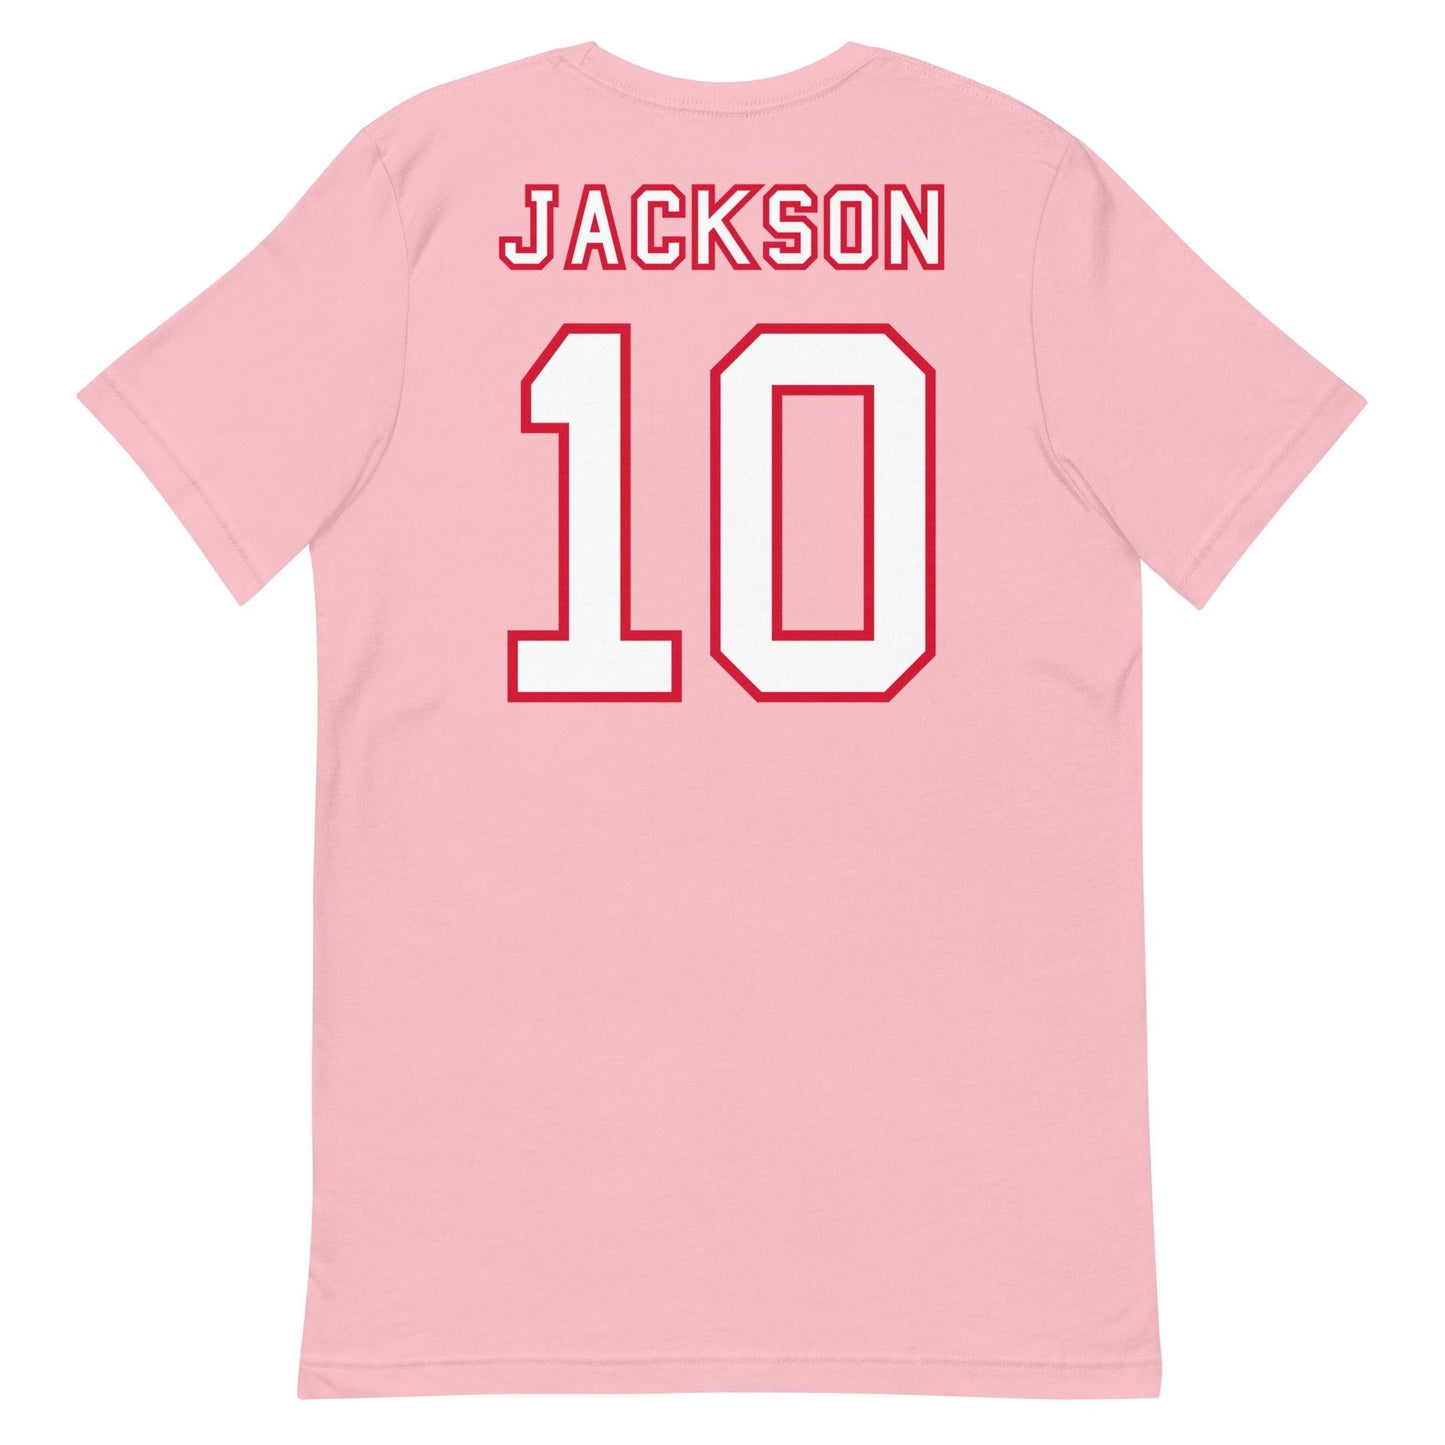 Kearis Jackson "Jersey" t-shirt - Fan Arch